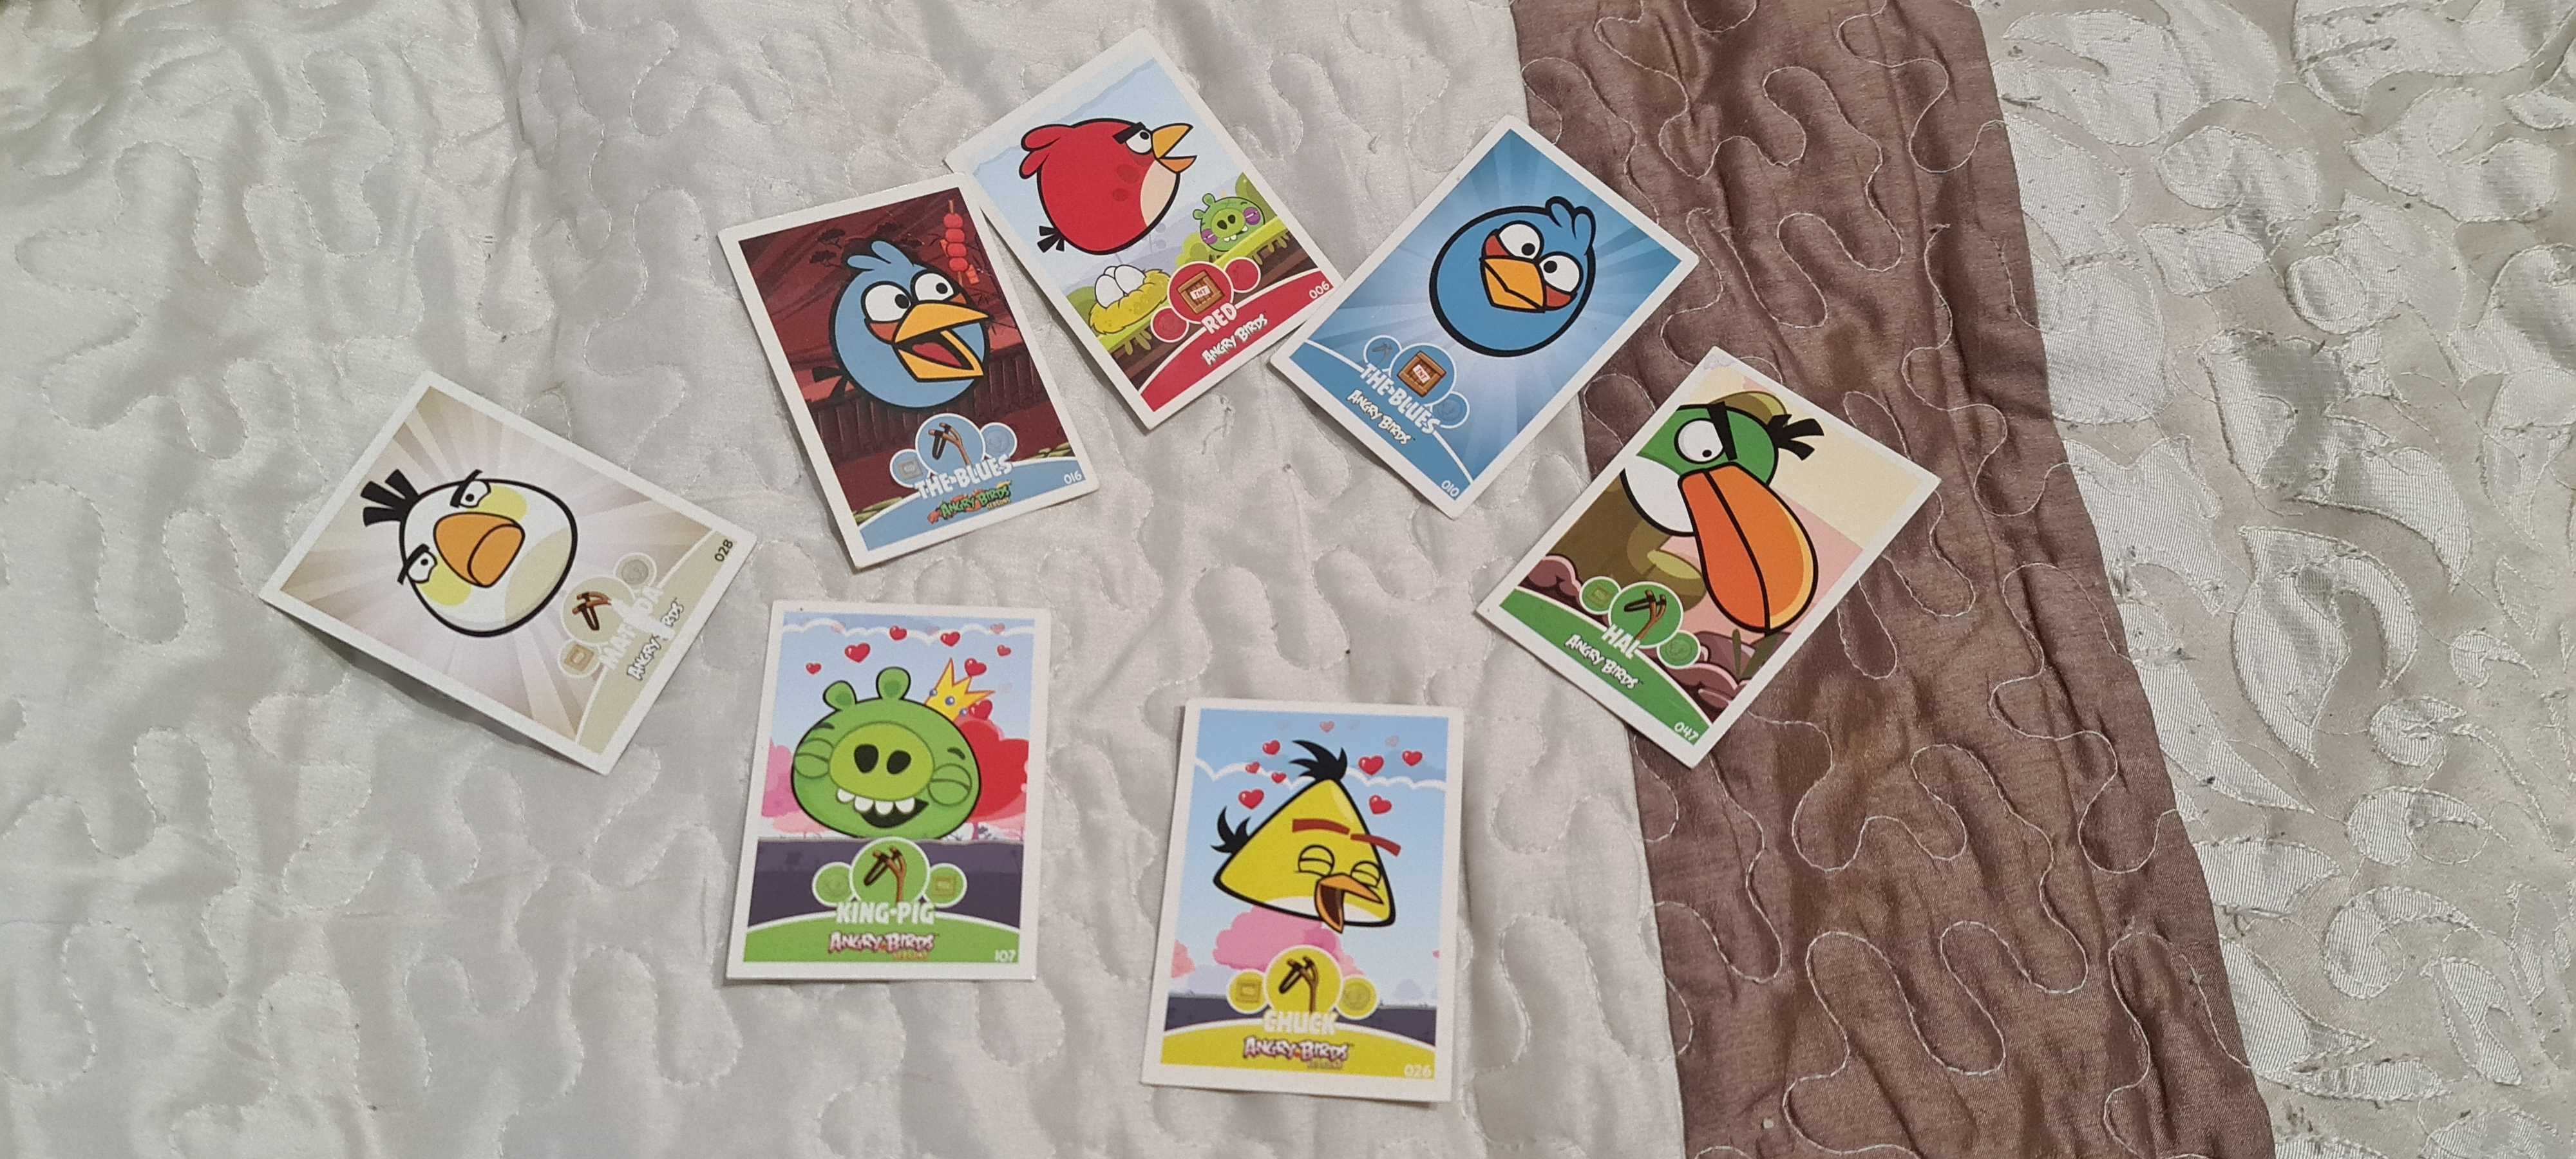 Karty Angry Birds do albumu lub zabawy / Zestaw